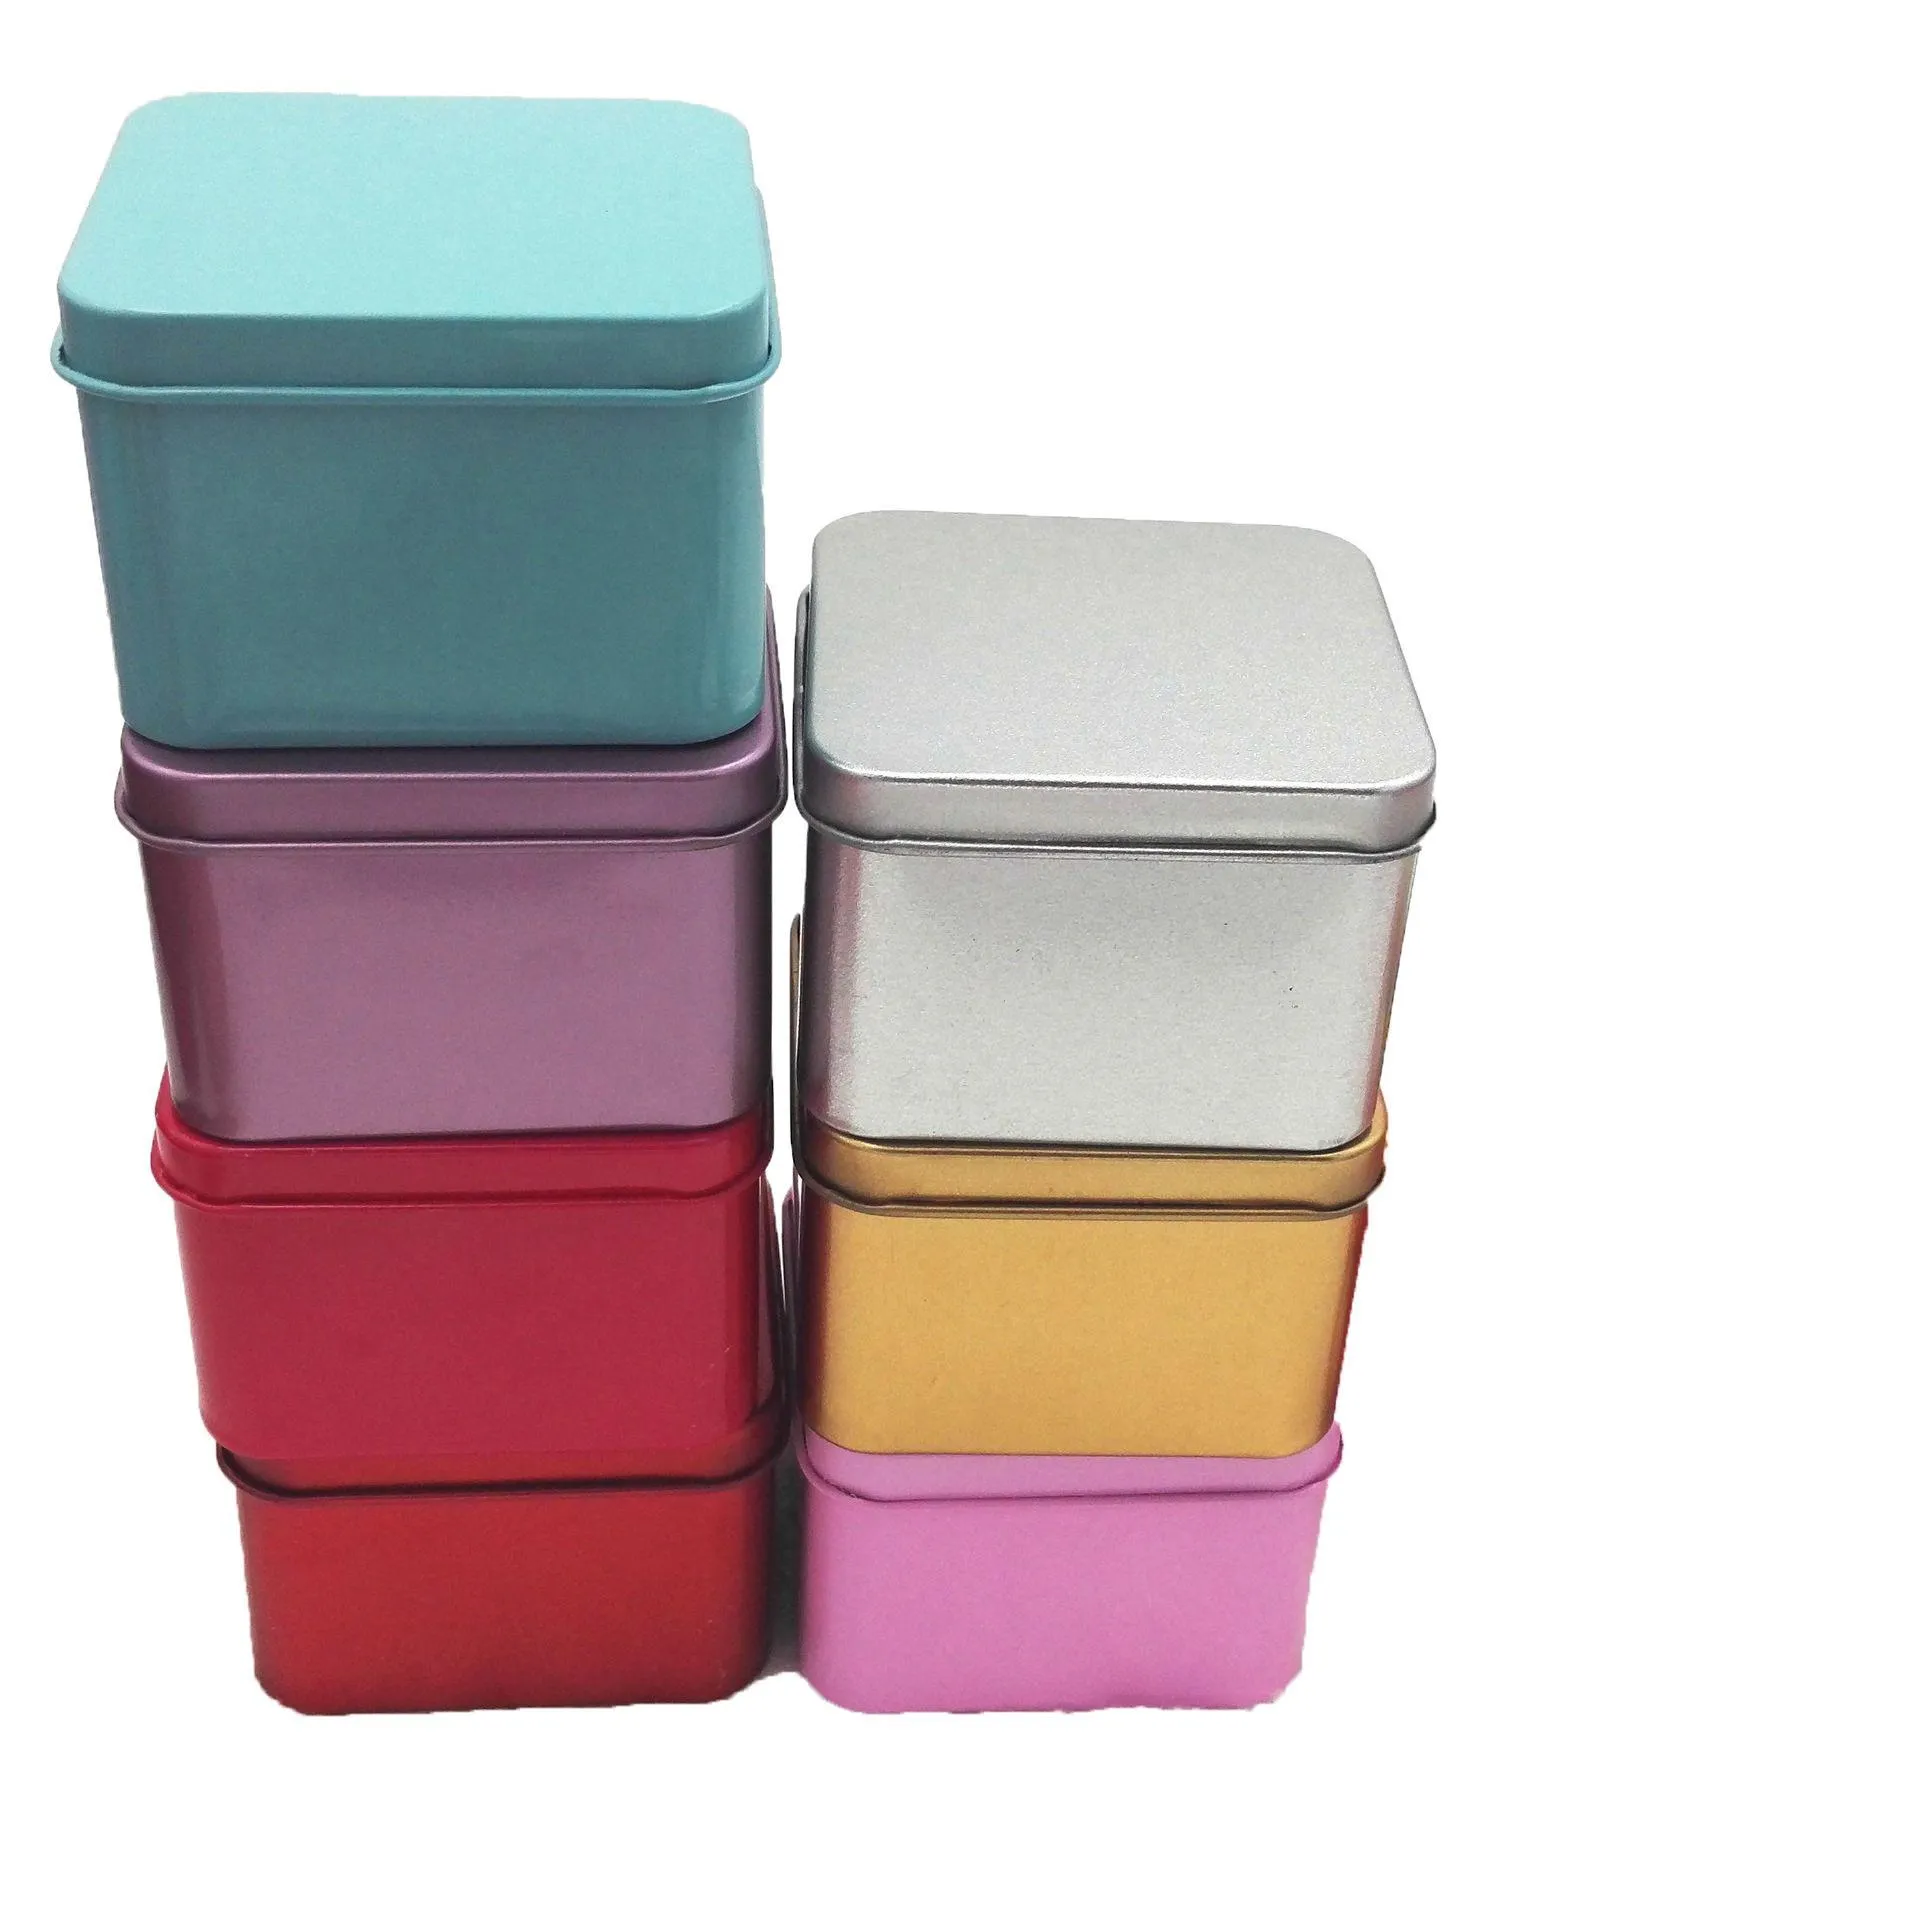 Quare Tea Candy Storage Box Wedding Favor Cyna Box Sundries Słuchawki Organizator Container Odbierz Pudełko Prezent Case